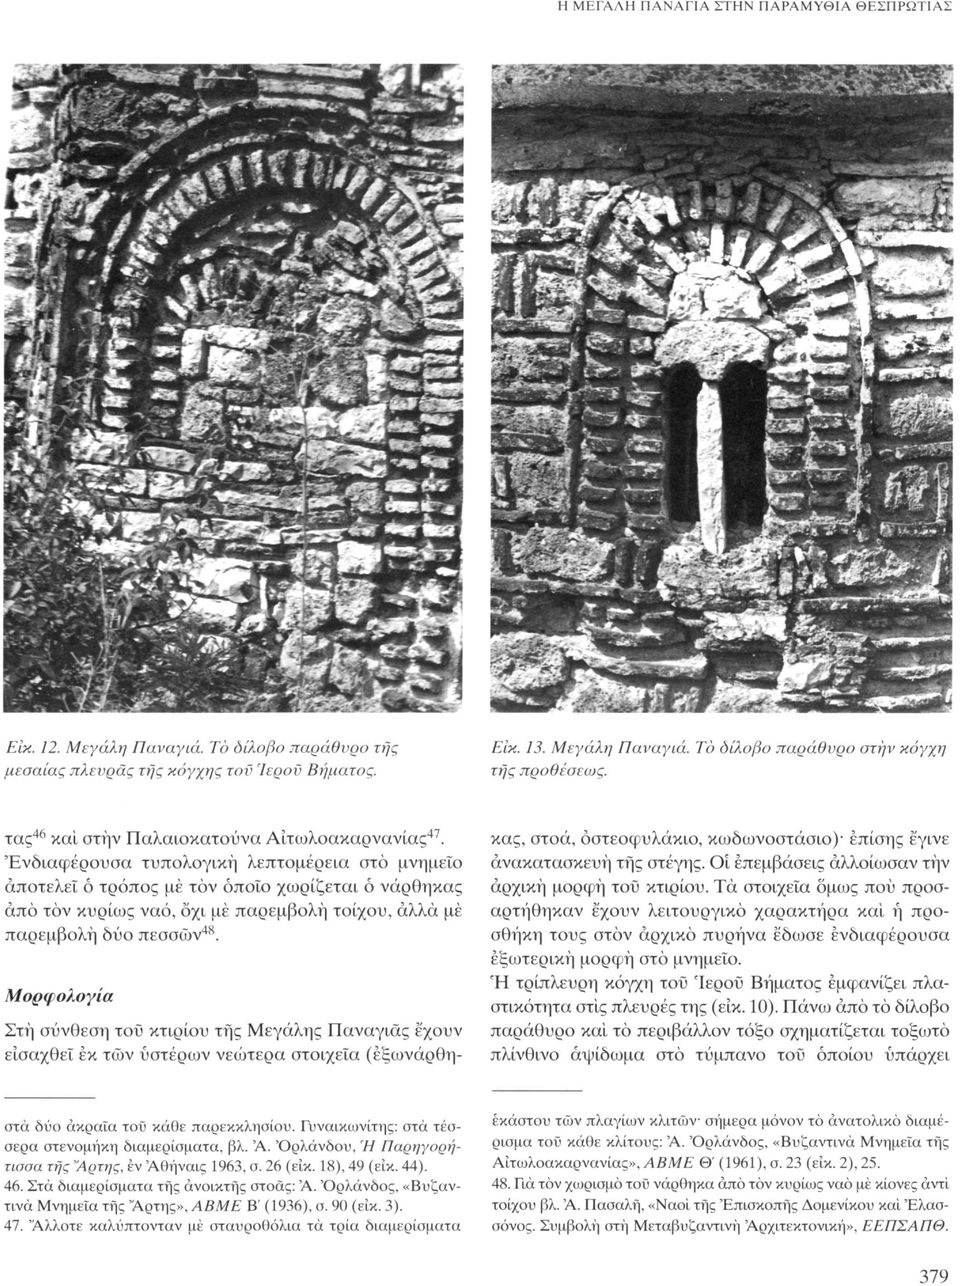 'Ενδιαφέρουσα τυπολογική λεπτομέρεια στο μνημείο αποτελεί ό τρόπος με τον όποιο χωρίζεται ό νάρθηκας από τον κυρίως ναό, όχι με παρεμβολή τοίχου, άλλα μέ παρεμβολή δύο πεσσών 48.